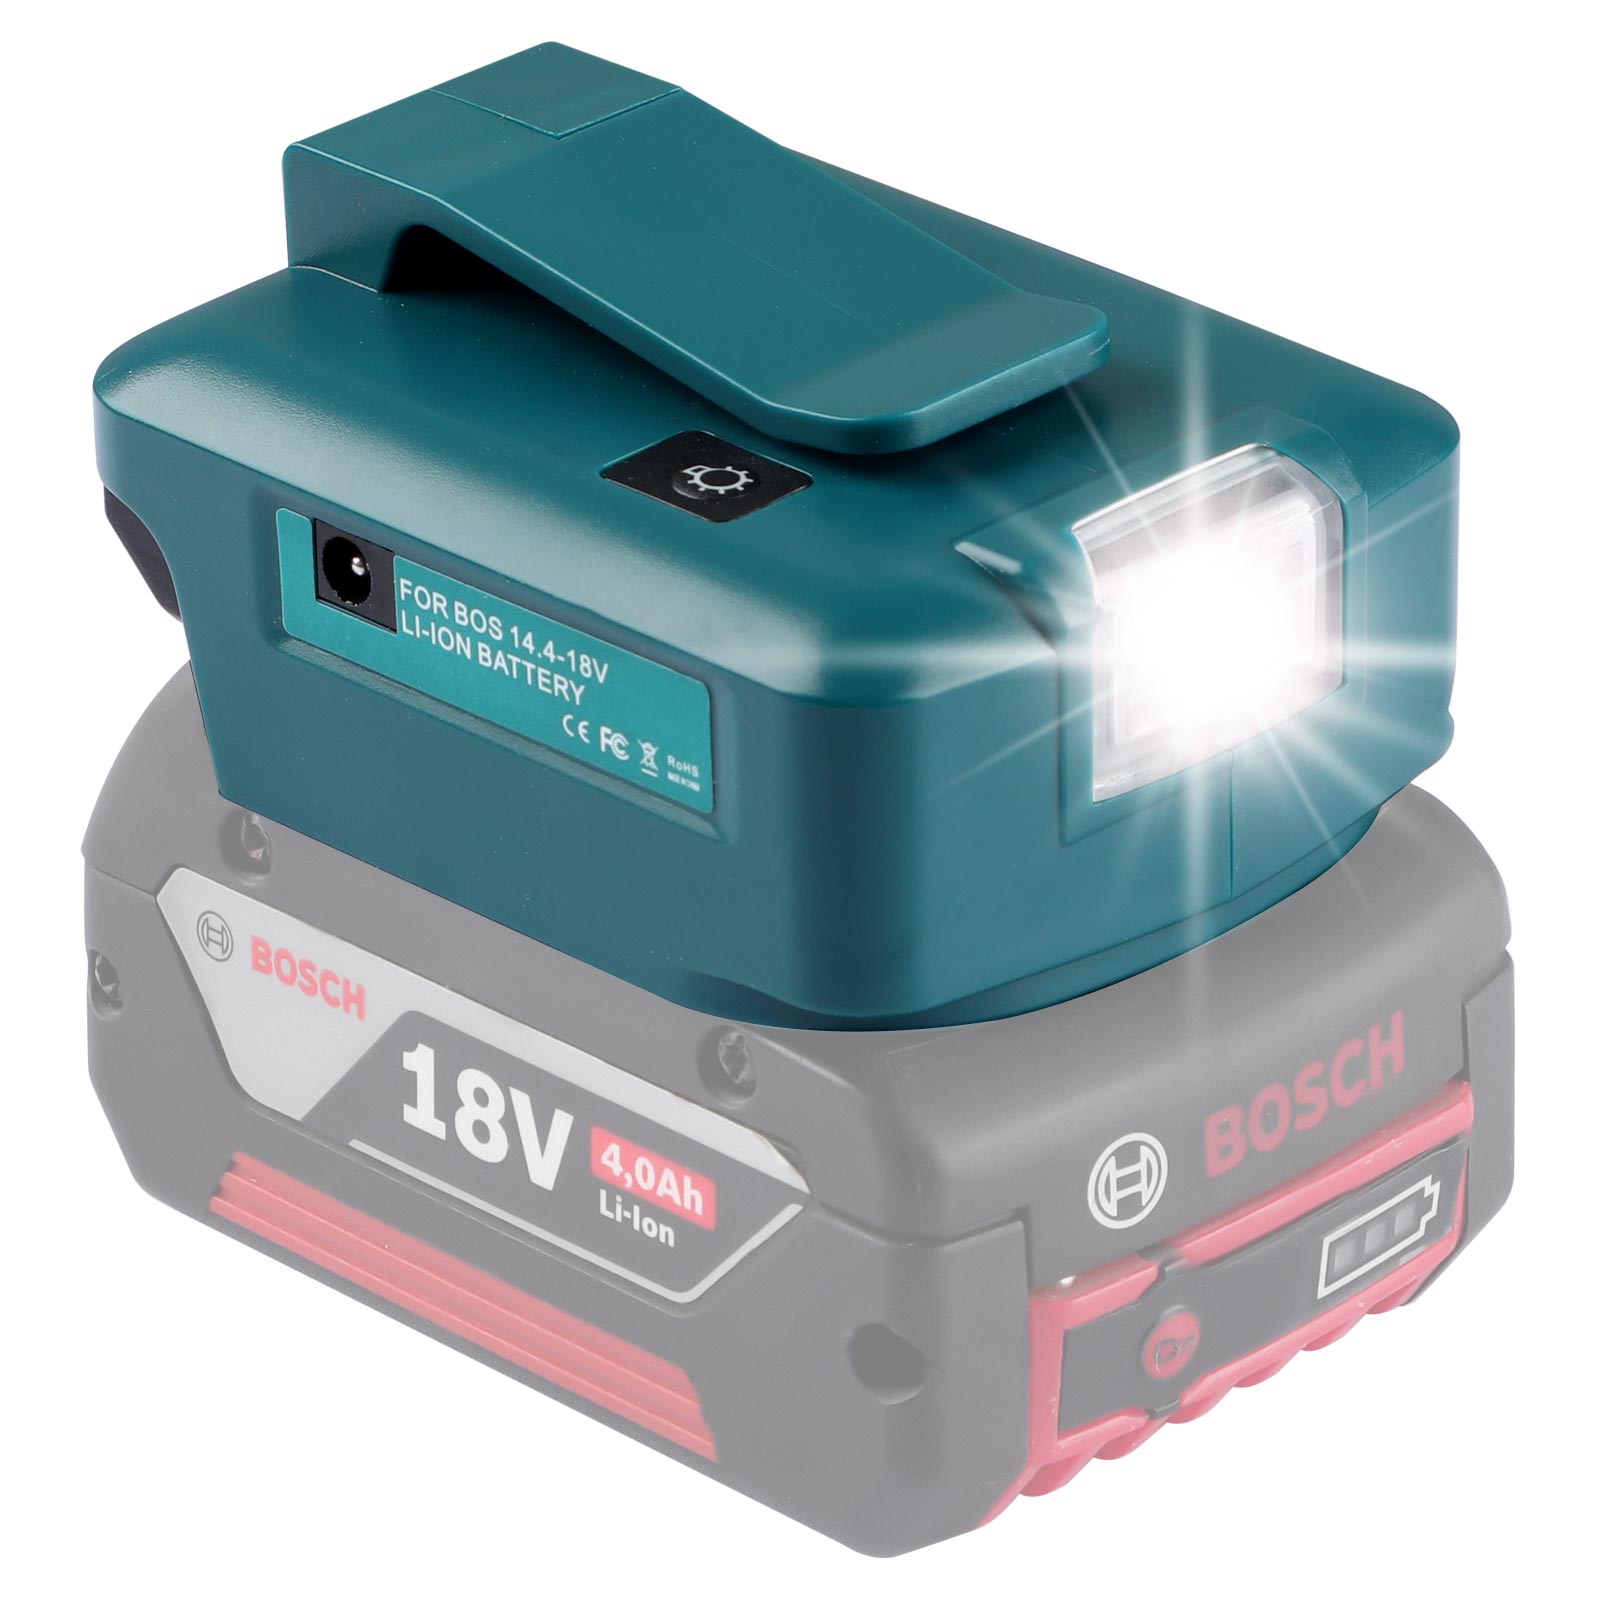 Jiro LED adaptatera bateria Urun miaraka amin'ny seranan-tsambo DC & seranan-tsambo USB 2 ho an'ny Bosch 14.4-18V Lithium Battery Power Source